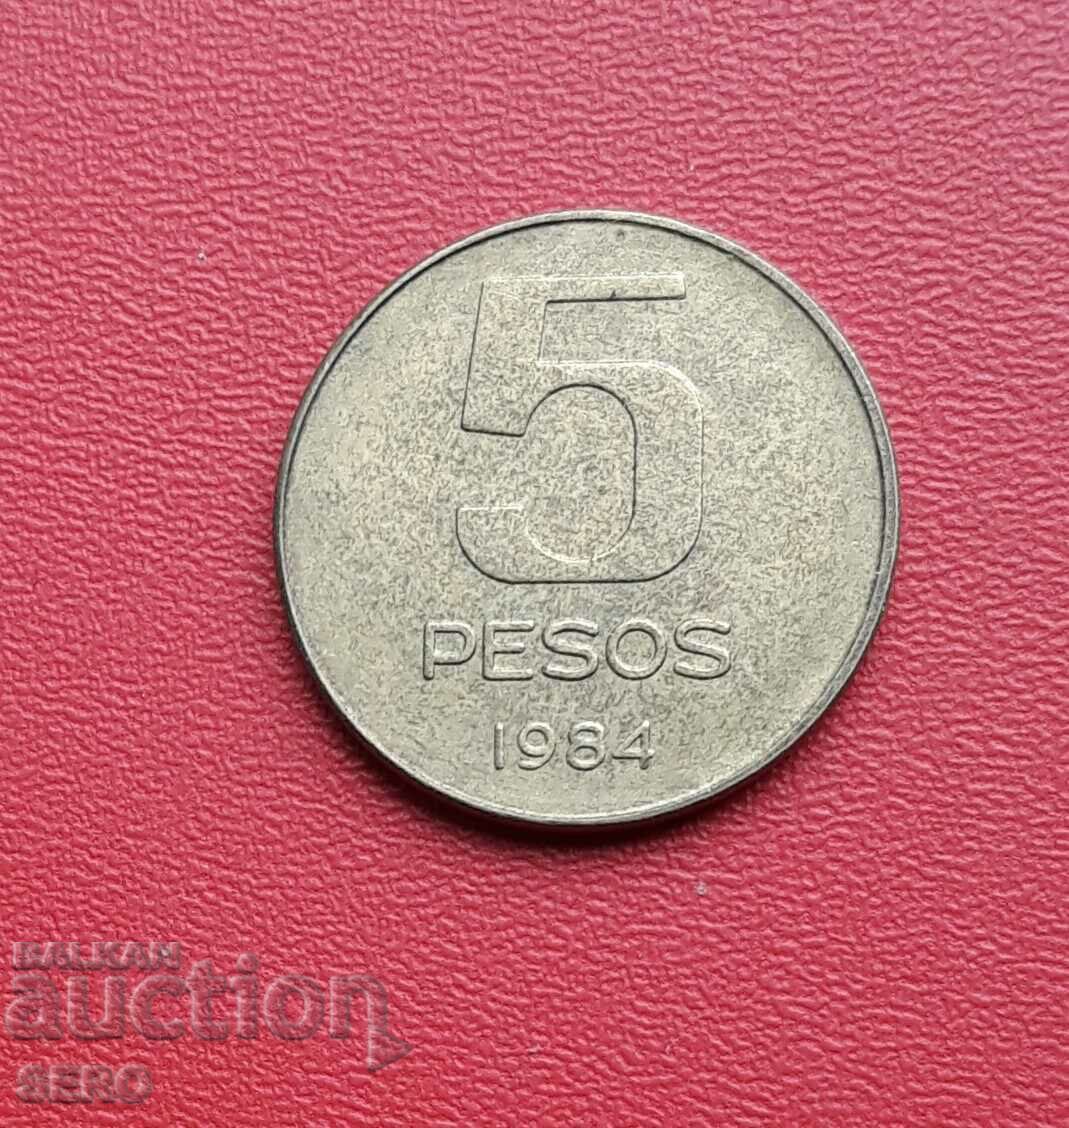 Argentina-5 pesos 1984